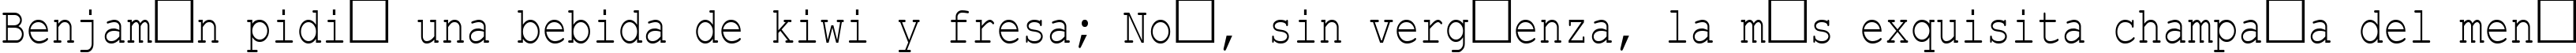 Пример написания шрифтом Courier New Cyr_80n текста на испанском